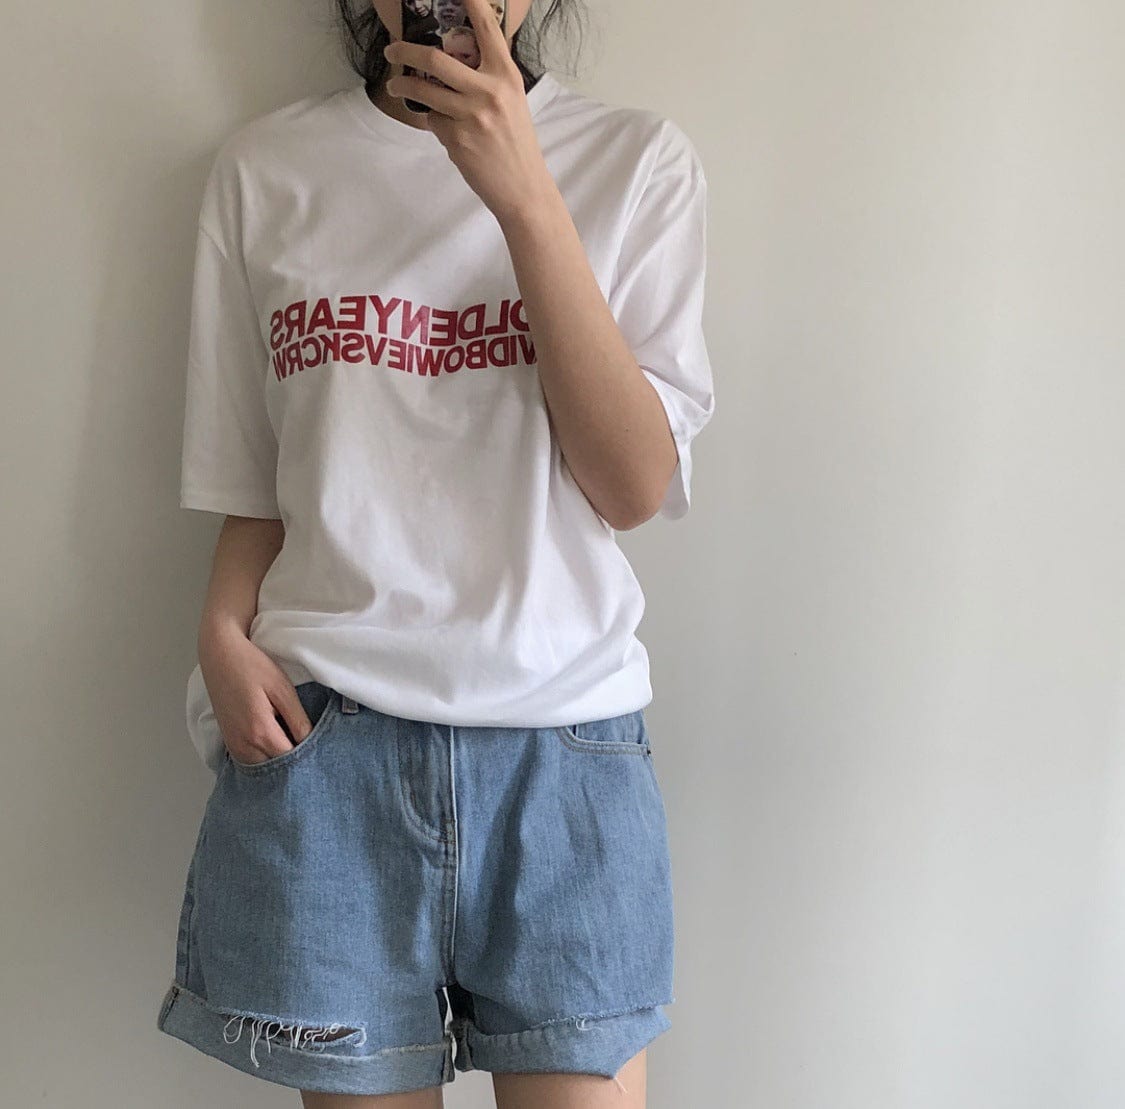 Luve nueva versión coreana de verano de Corea elegante camiseta con estampado del alfabeto en Chaqueta de algodón suelta de manga corta para mujer